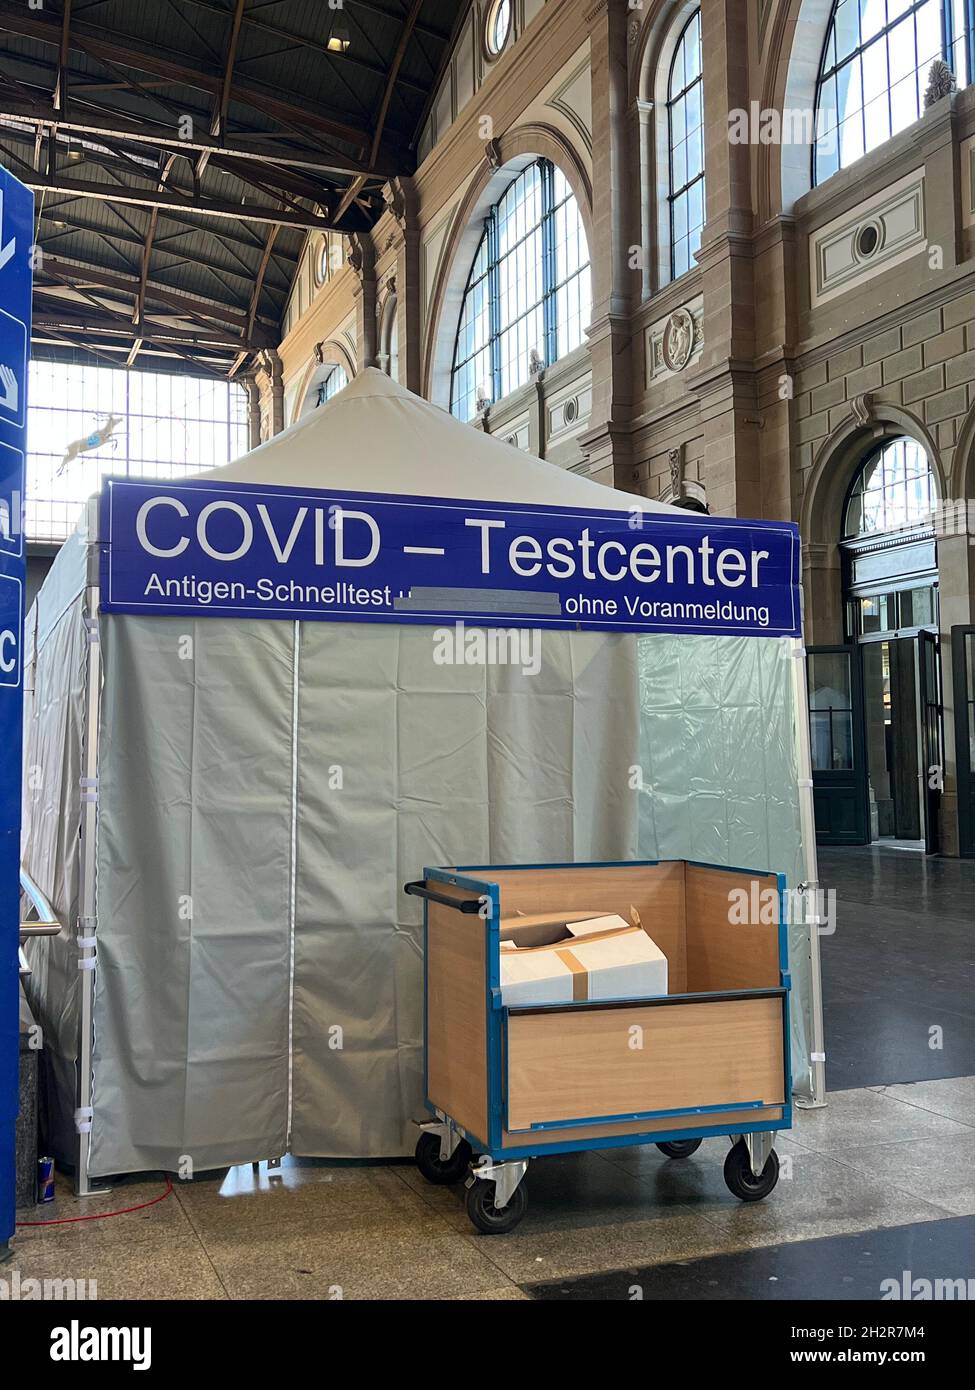 Centre d'essai Covid-19 sur la gare principale de Zurich.L'inscription en allemand indique qu'aucun rendez-vous n'est nécessaire pour le test d'antigène de vitesse.Arrière Banque D'Images